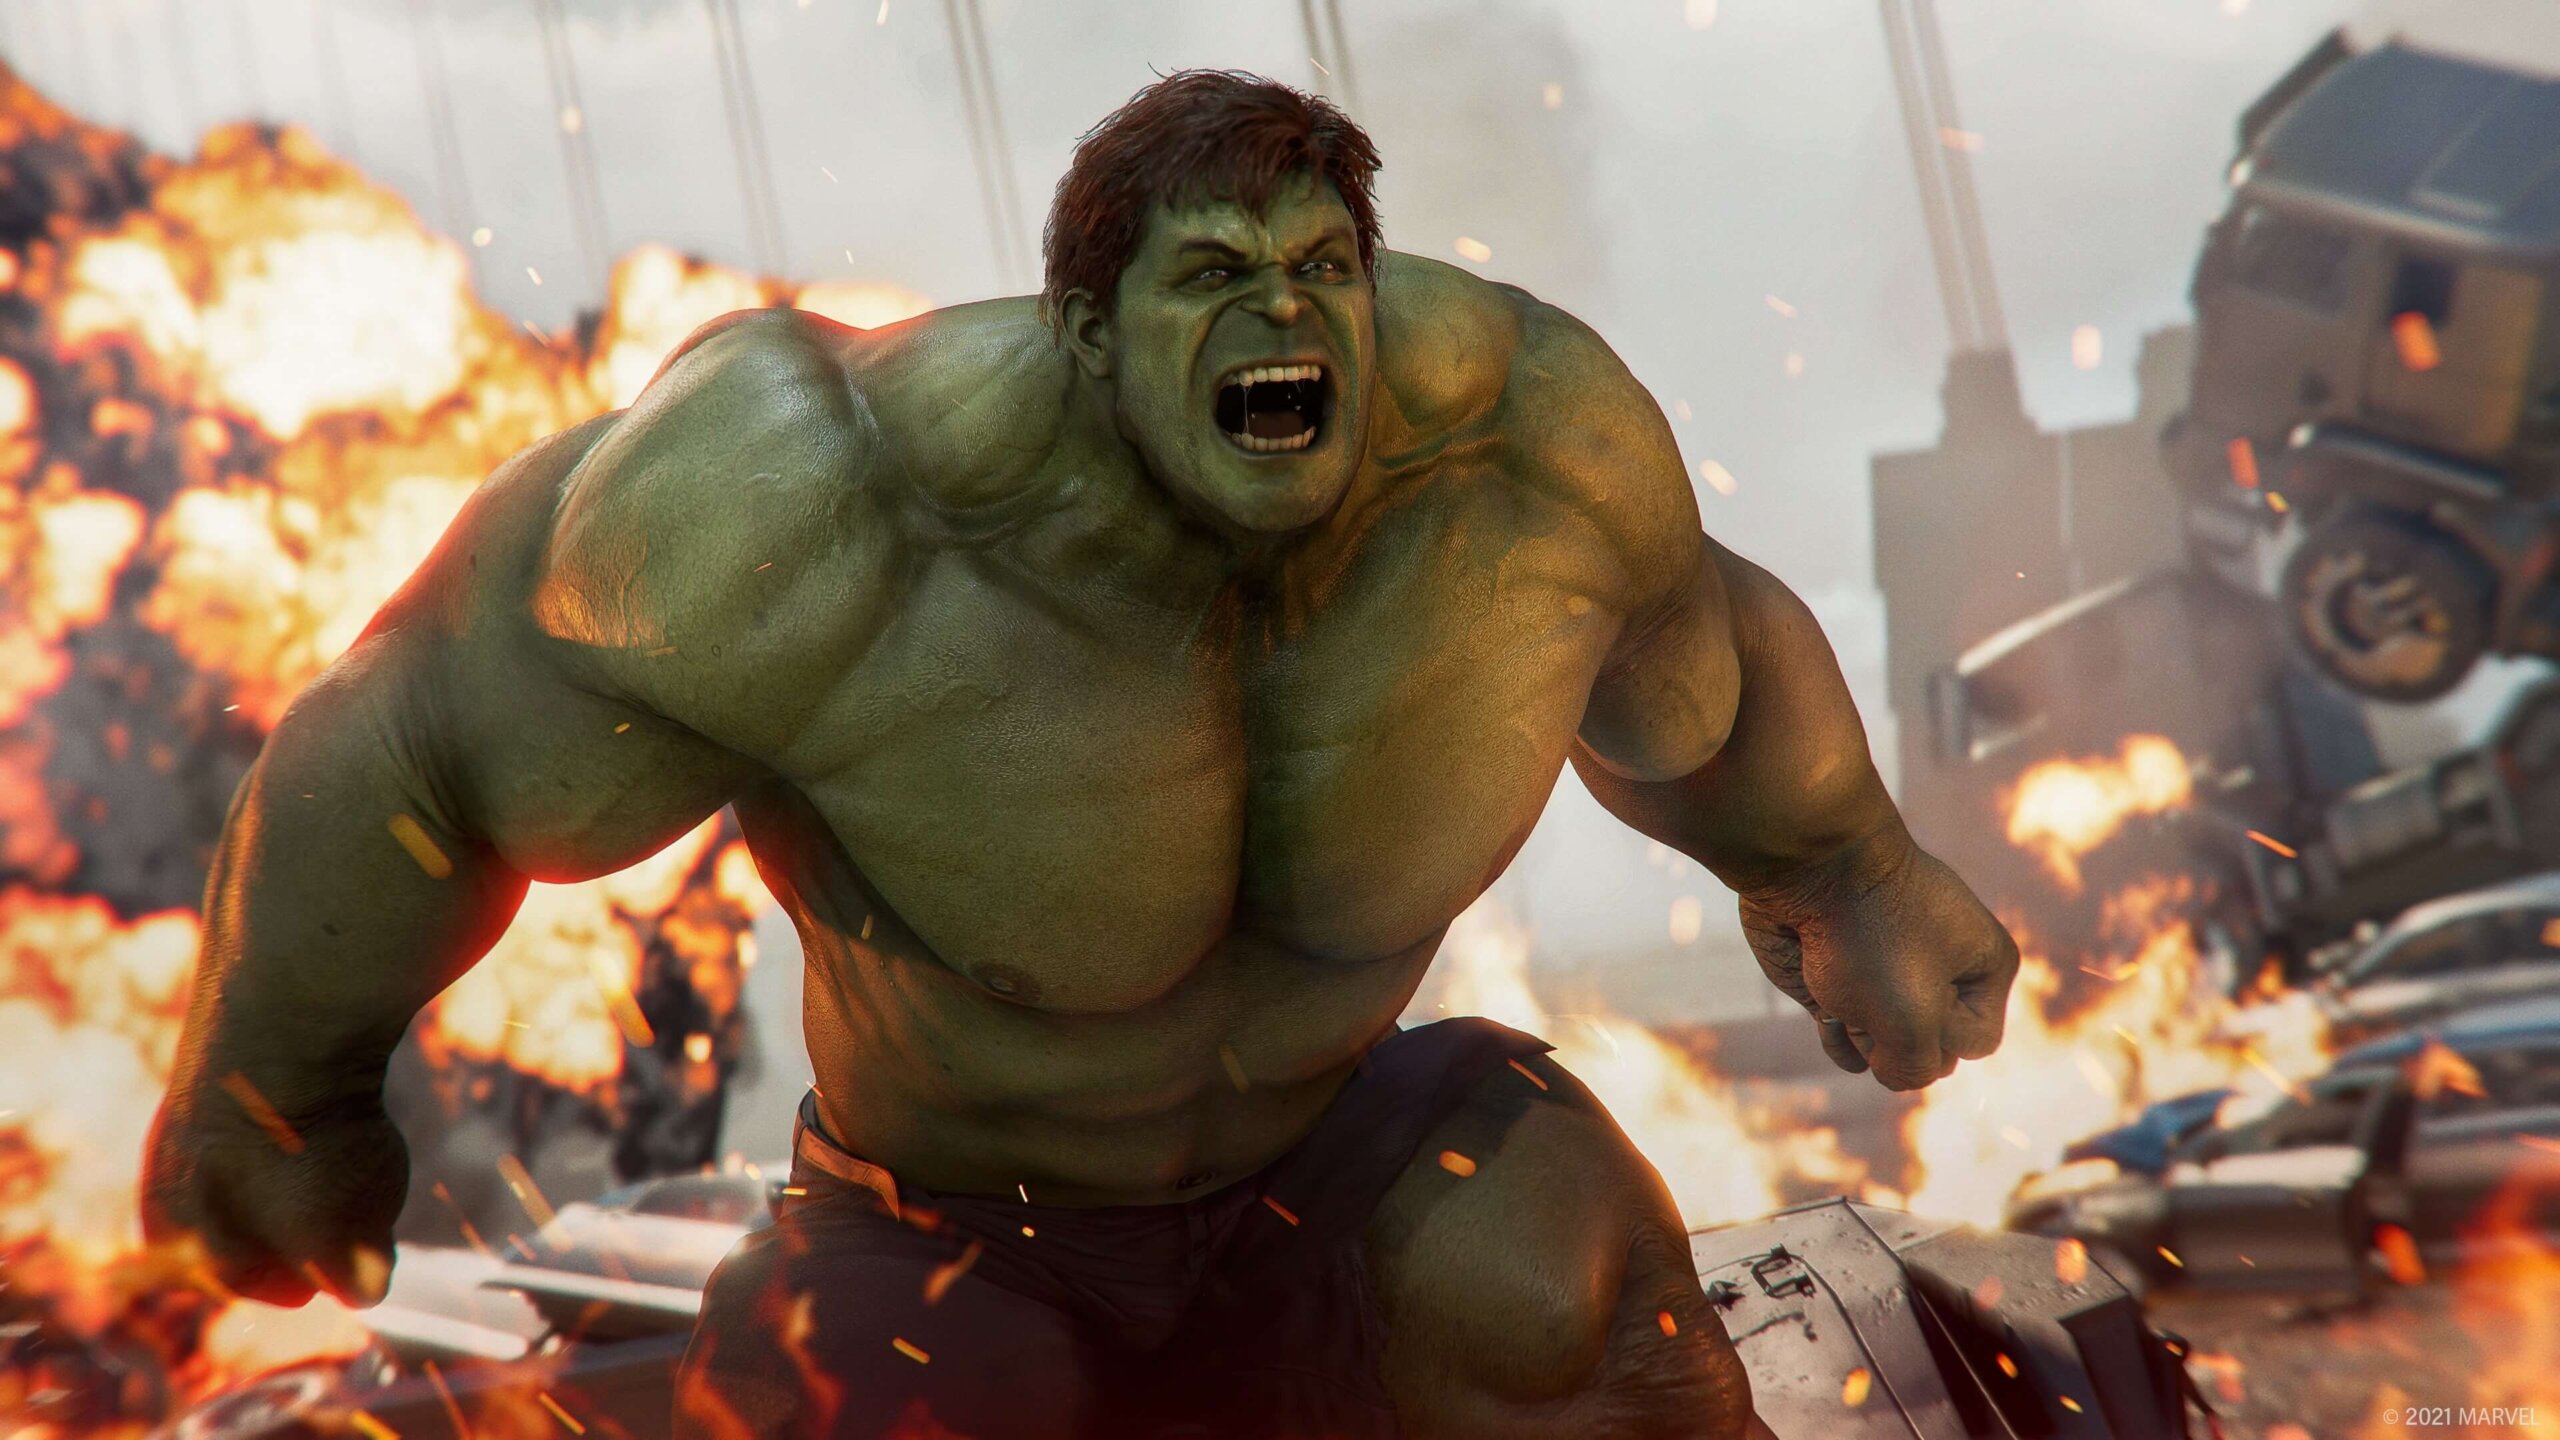 Marvel's Avengers' Hulk